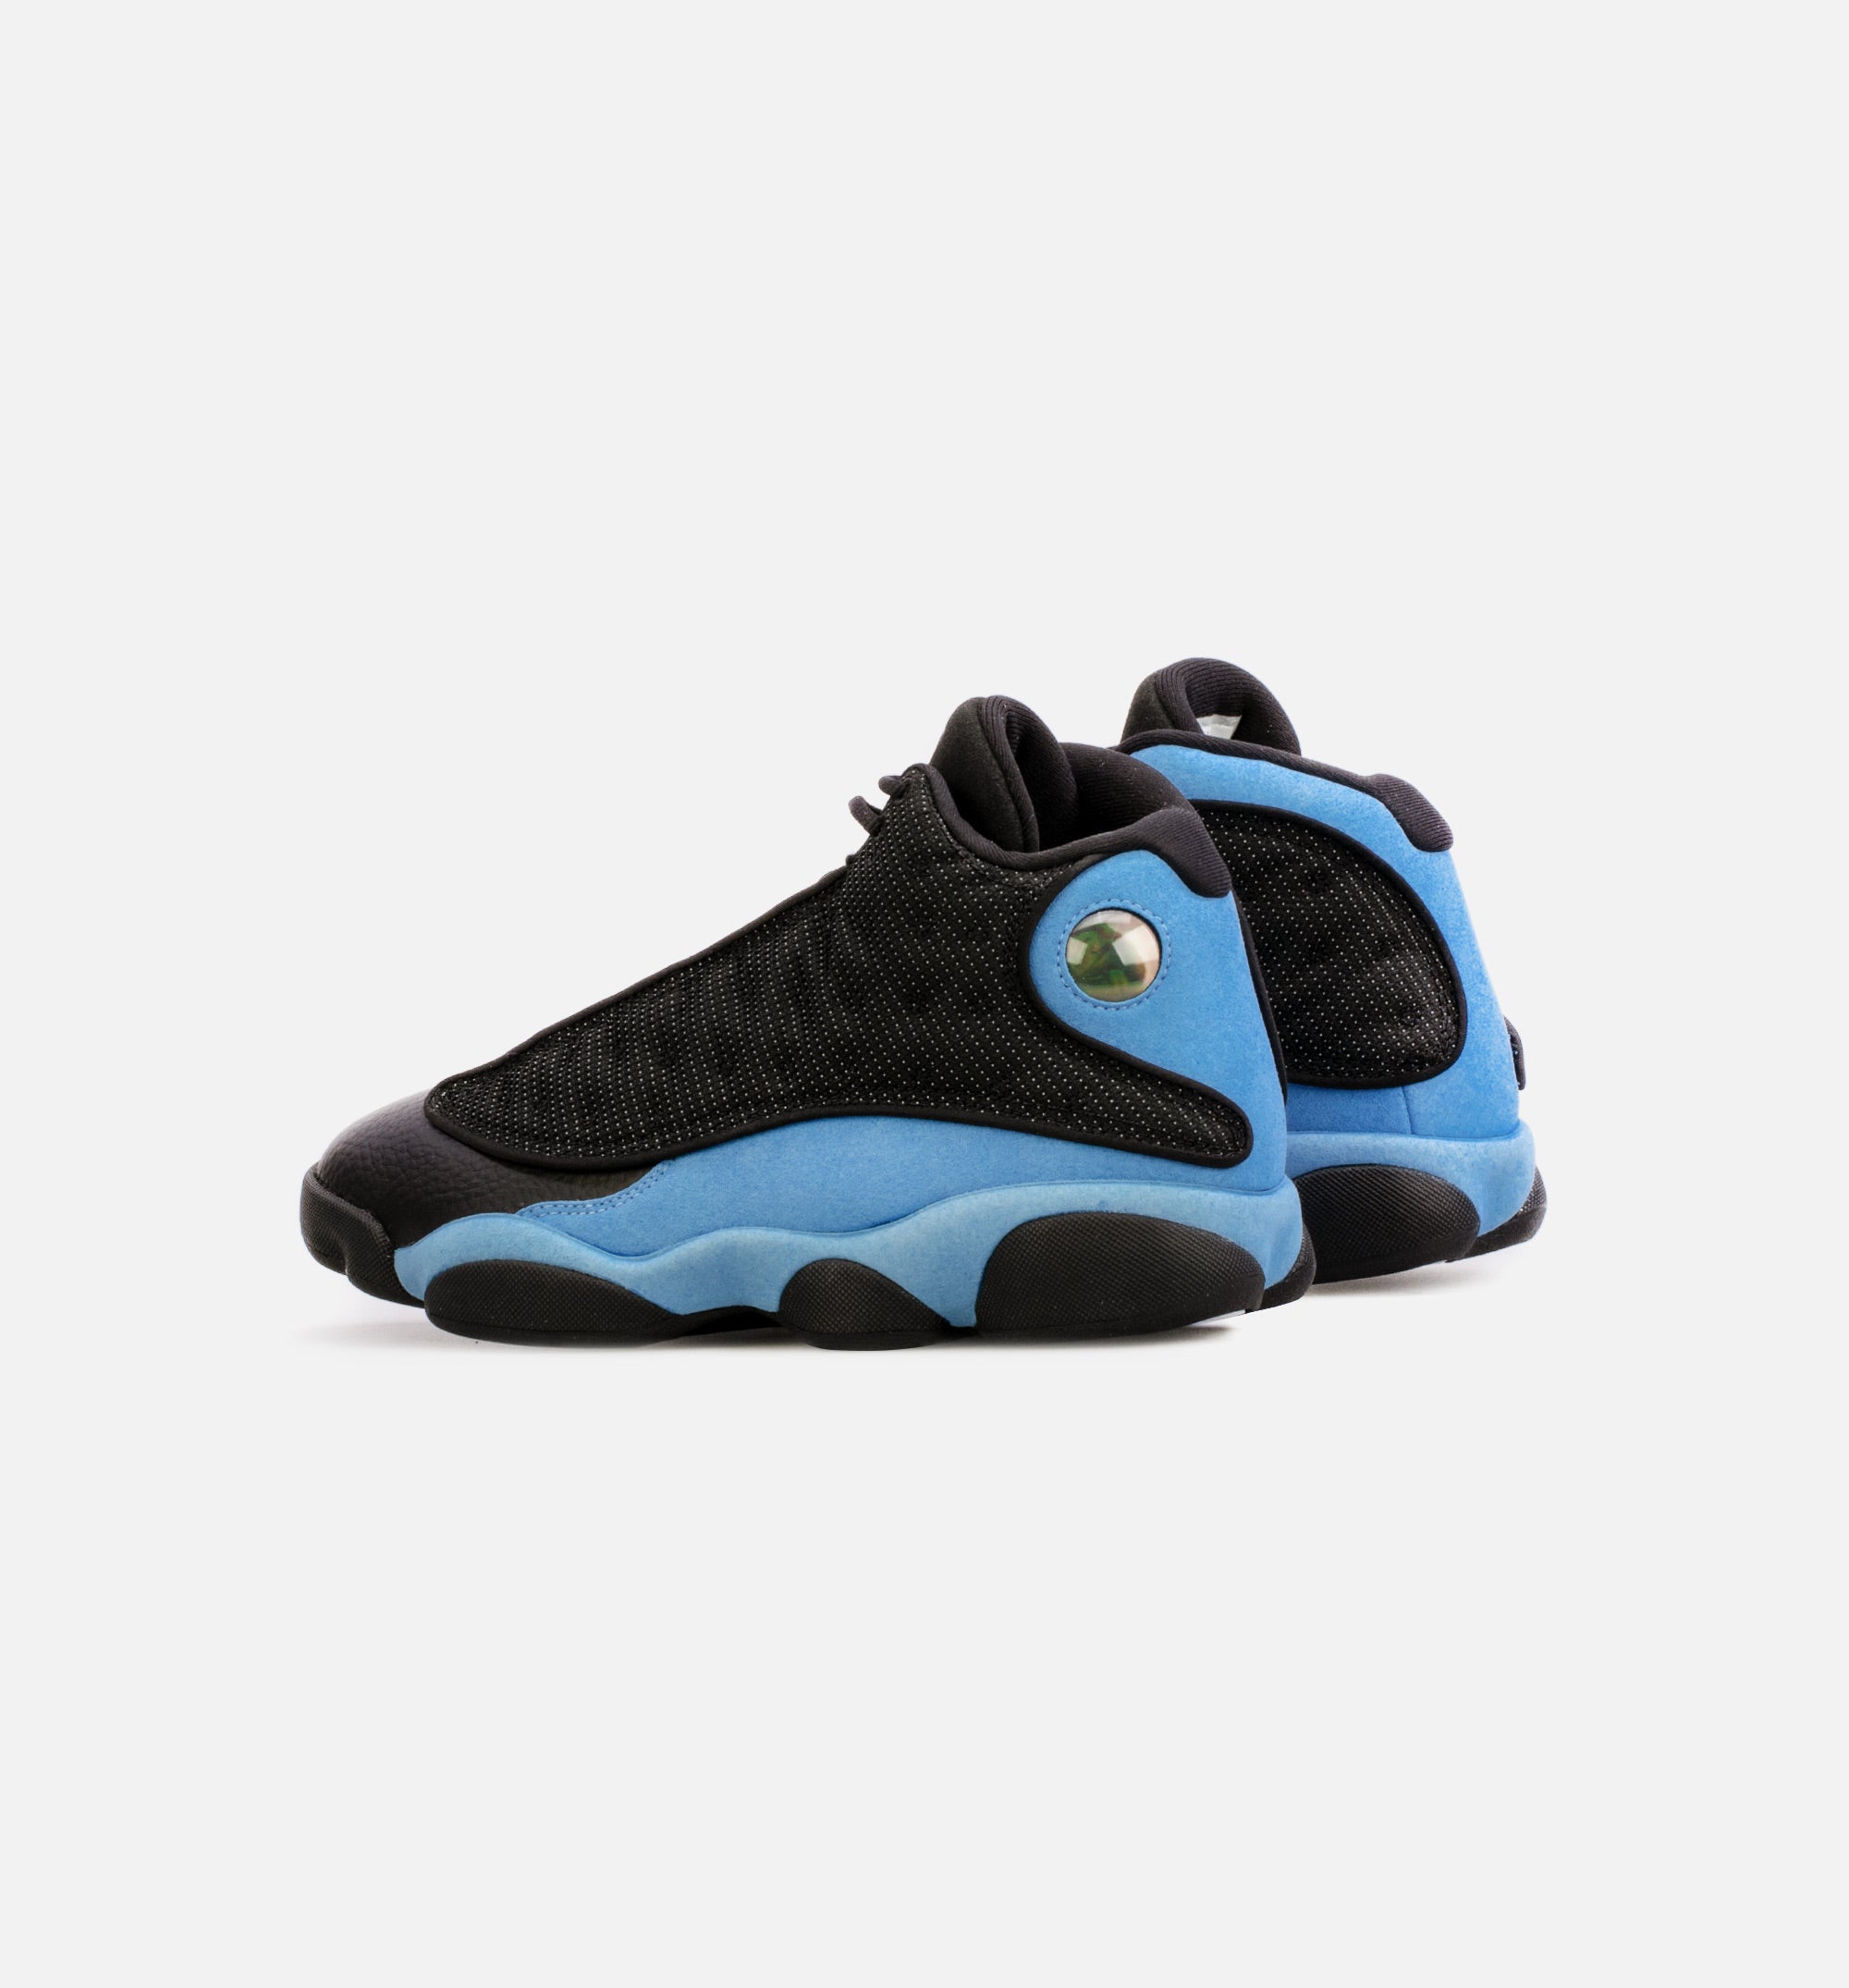 Air Jordan 13 Retro “University Blue” DJ5982-041